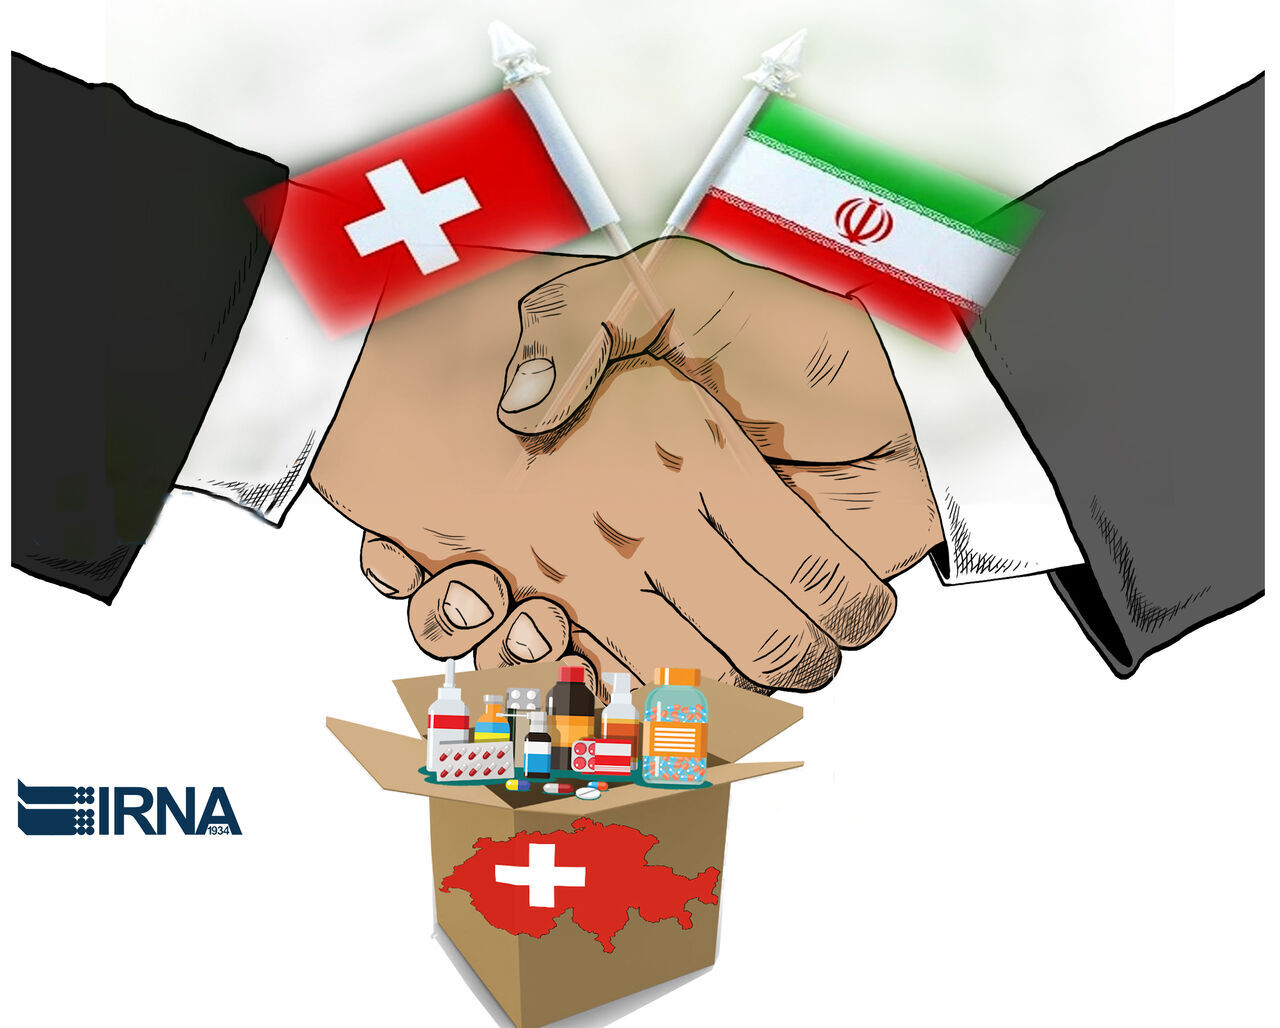 Sensitivities to financial channel of Iran, Switzerland decreasing